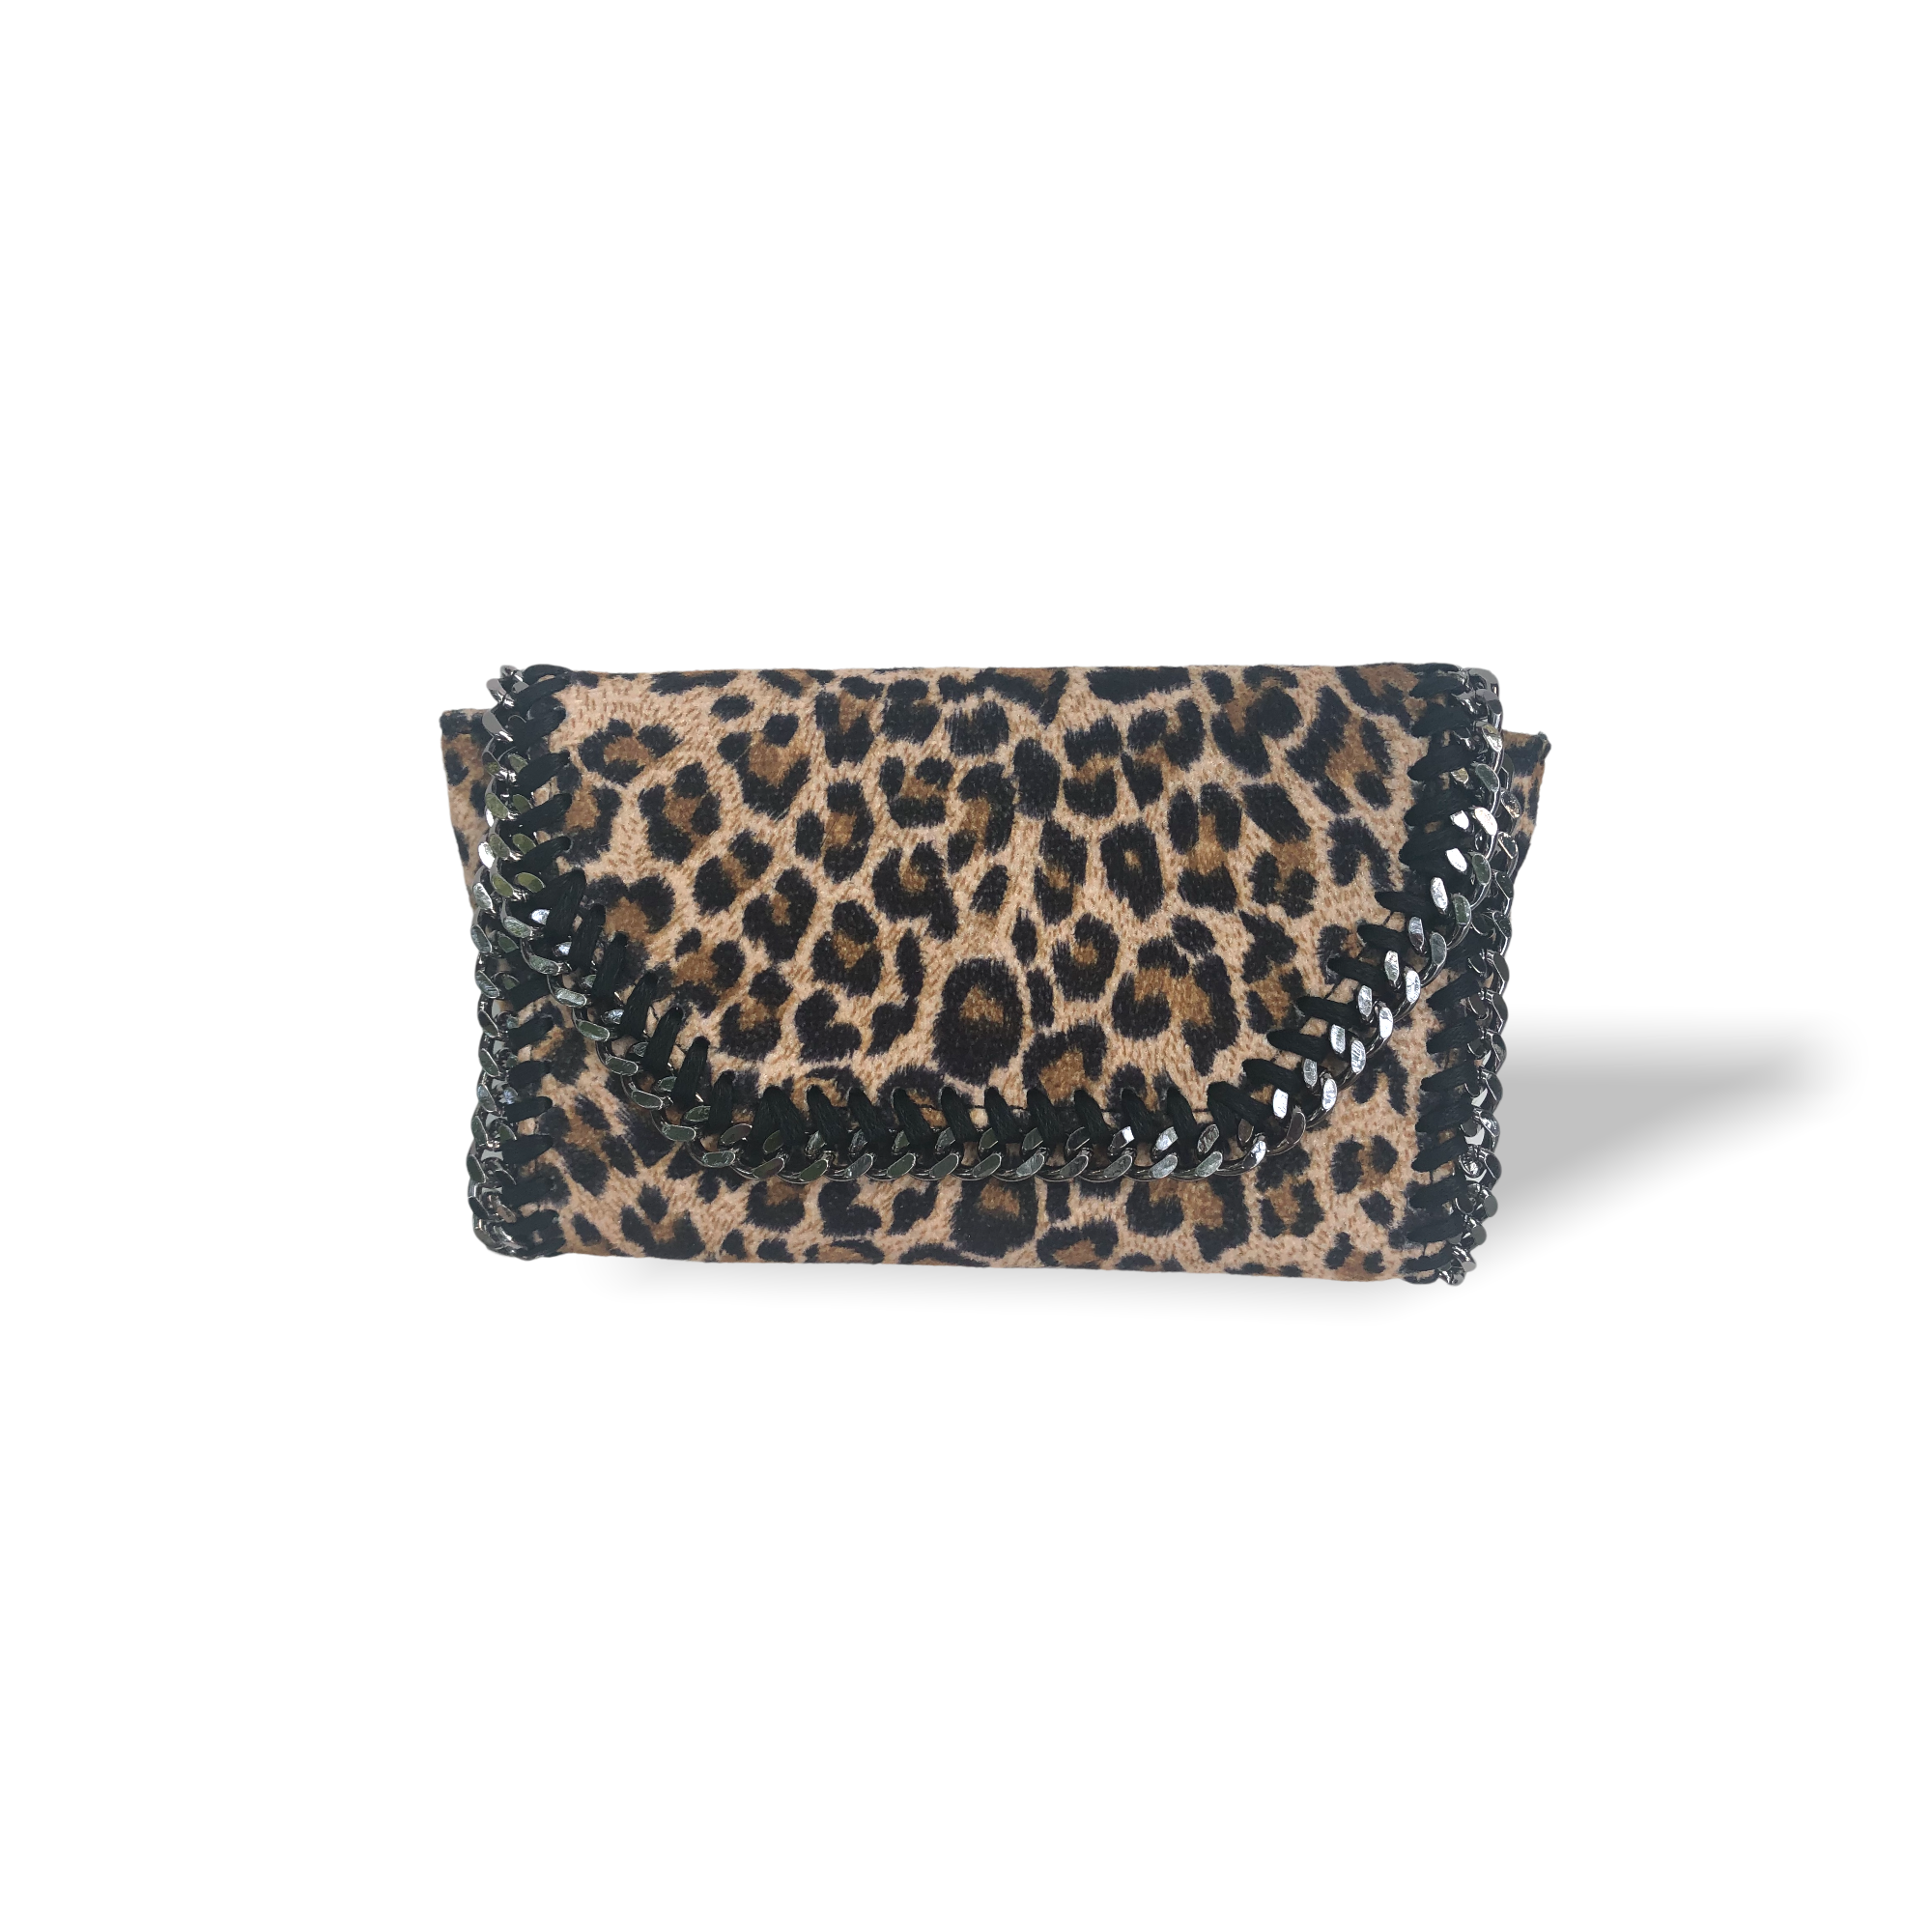 Phone bag in leopard / cheetah print fabric - grab and go bag